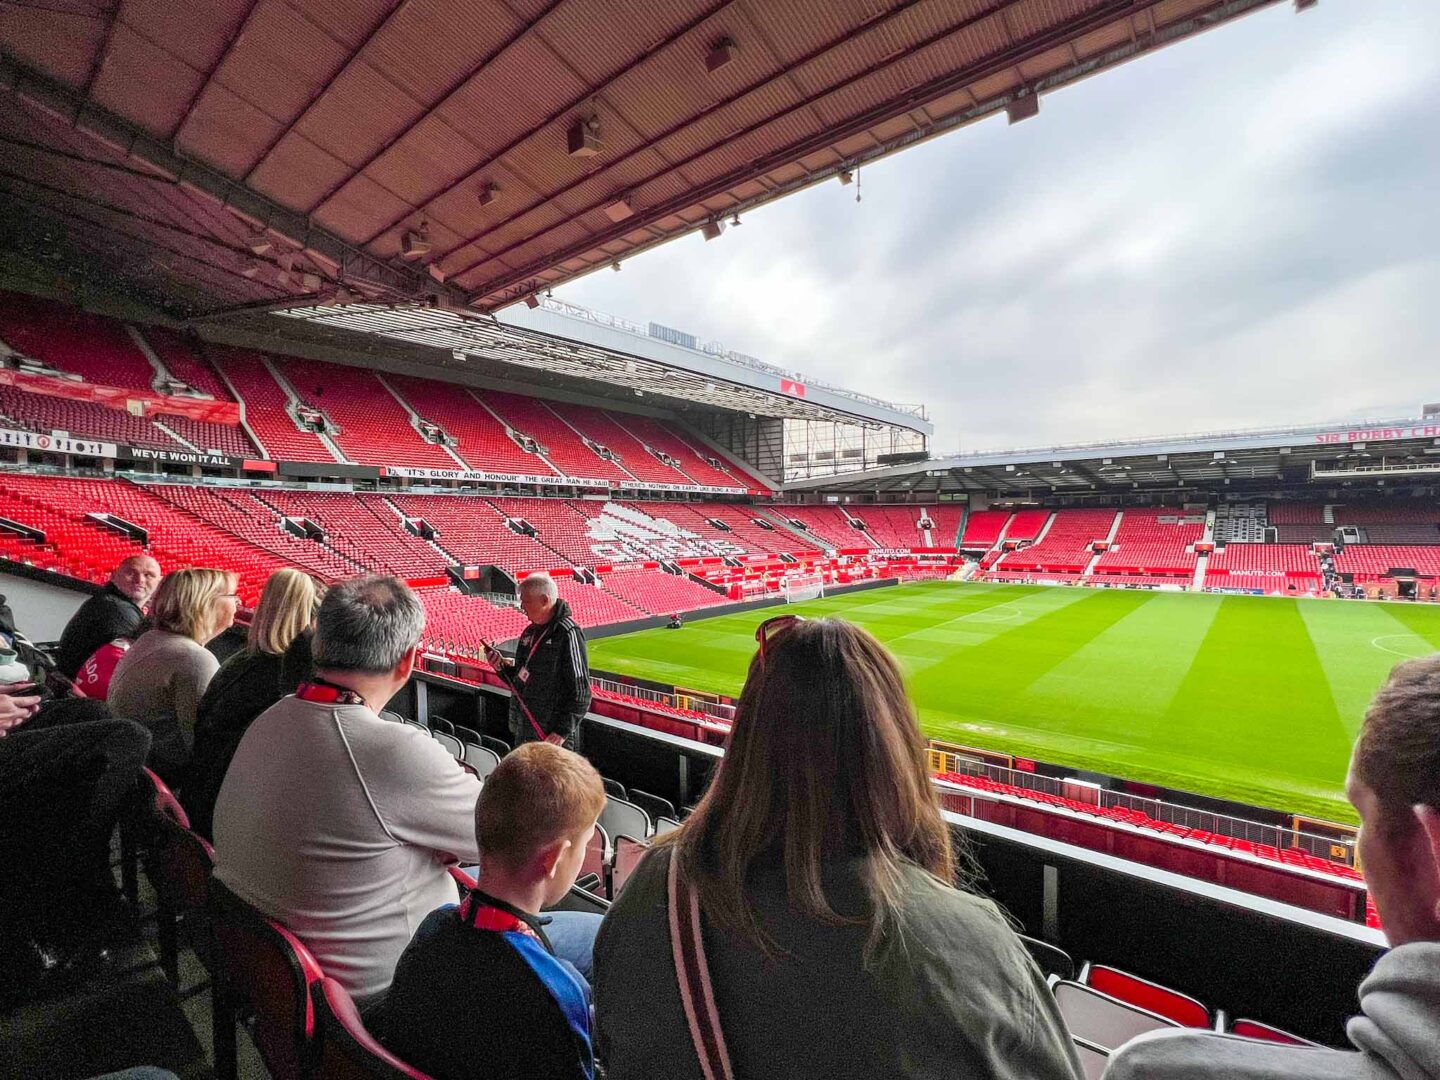 Manchester United Stadium Tour, start of tour in stadium